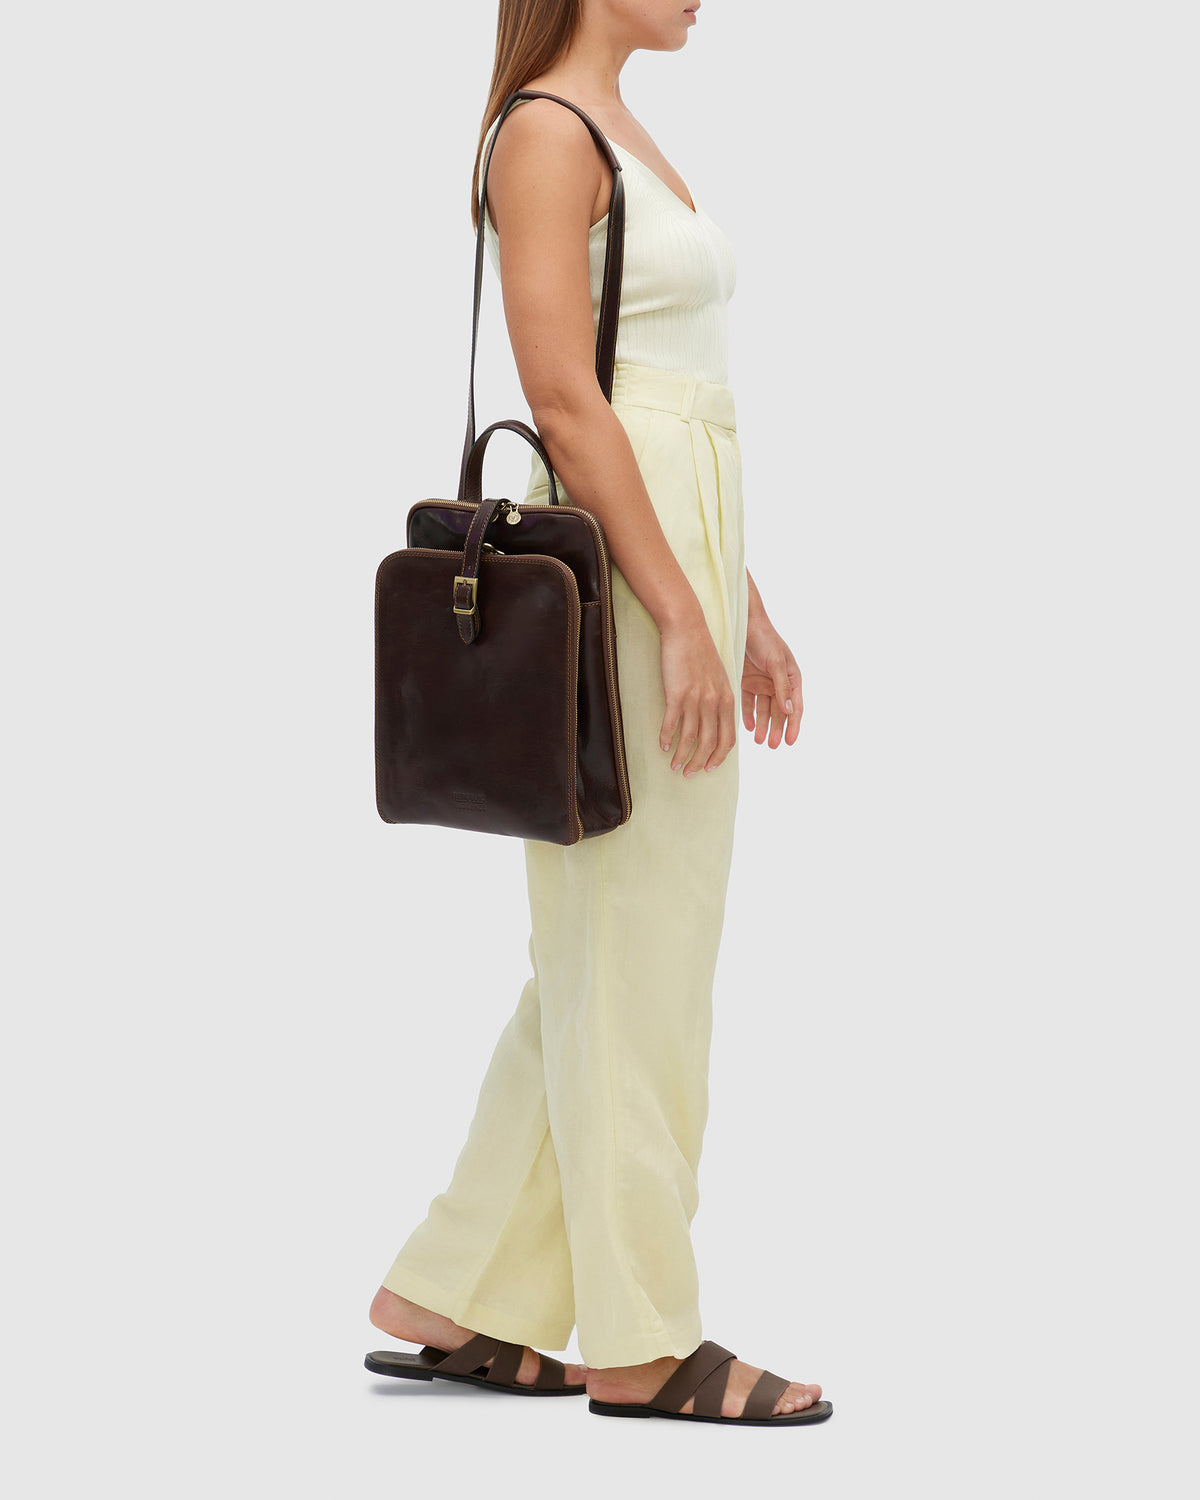 Emma Green - Shoulder Bag/ Backpack - Republic of Florence